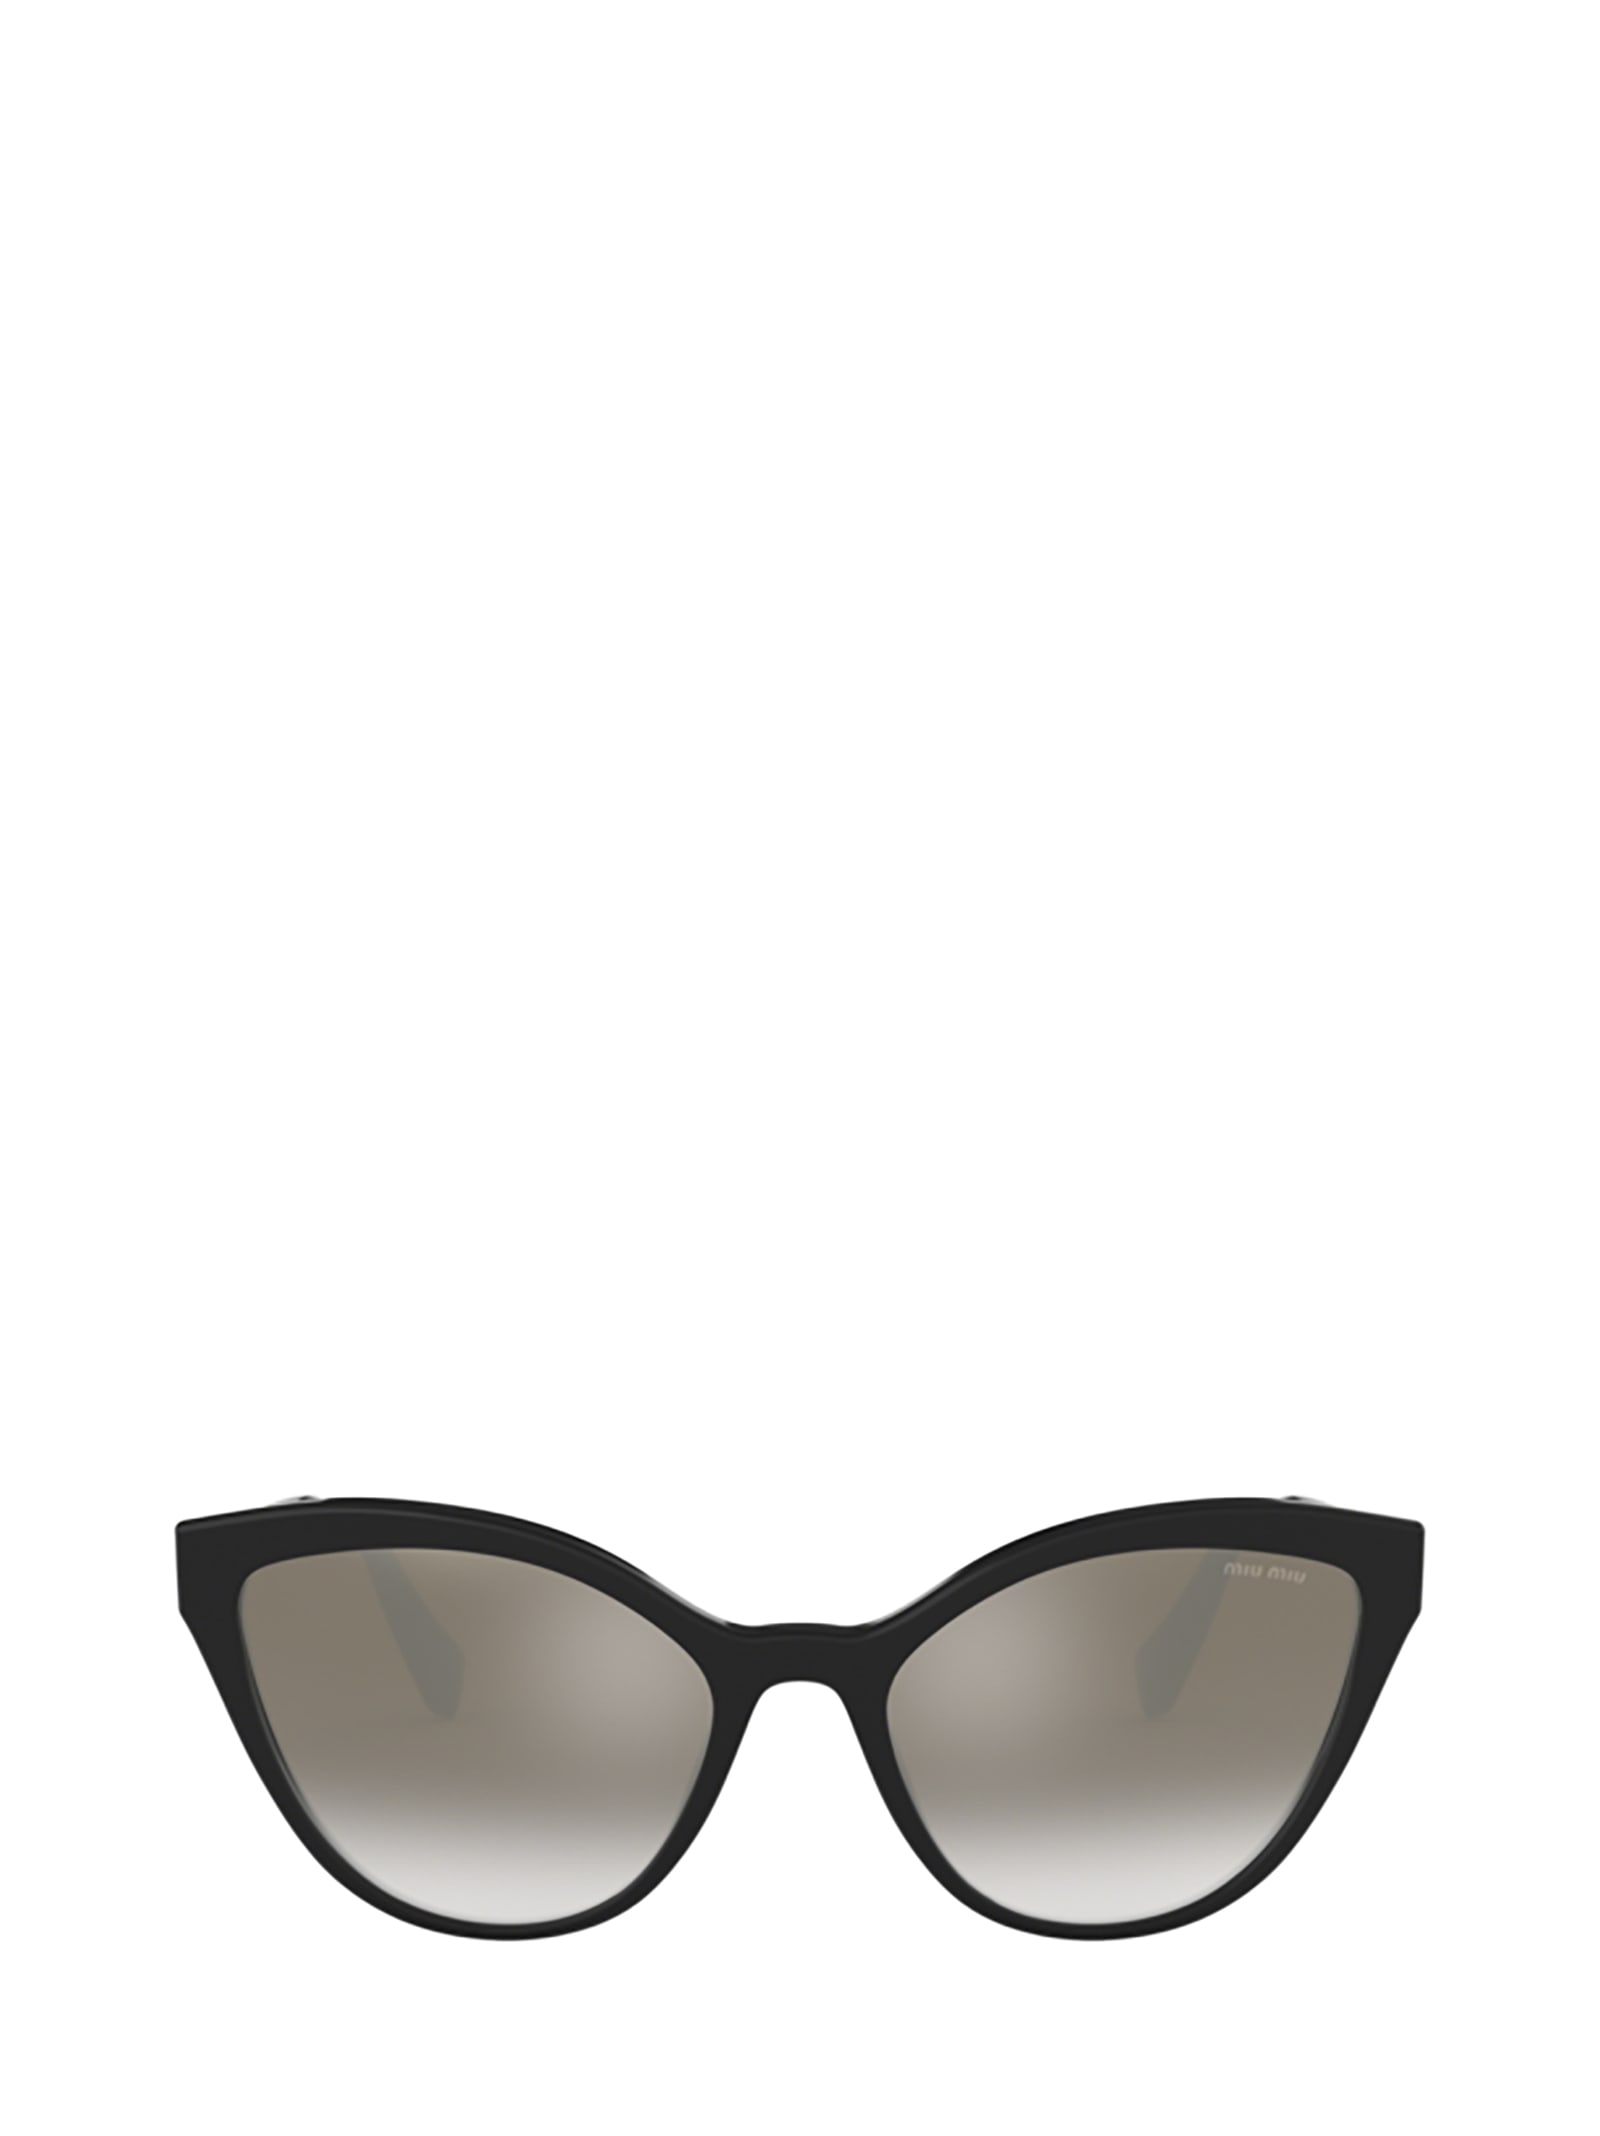 Miu Miu Eyewear Miu Miu Mu 03us Black Sunglasses